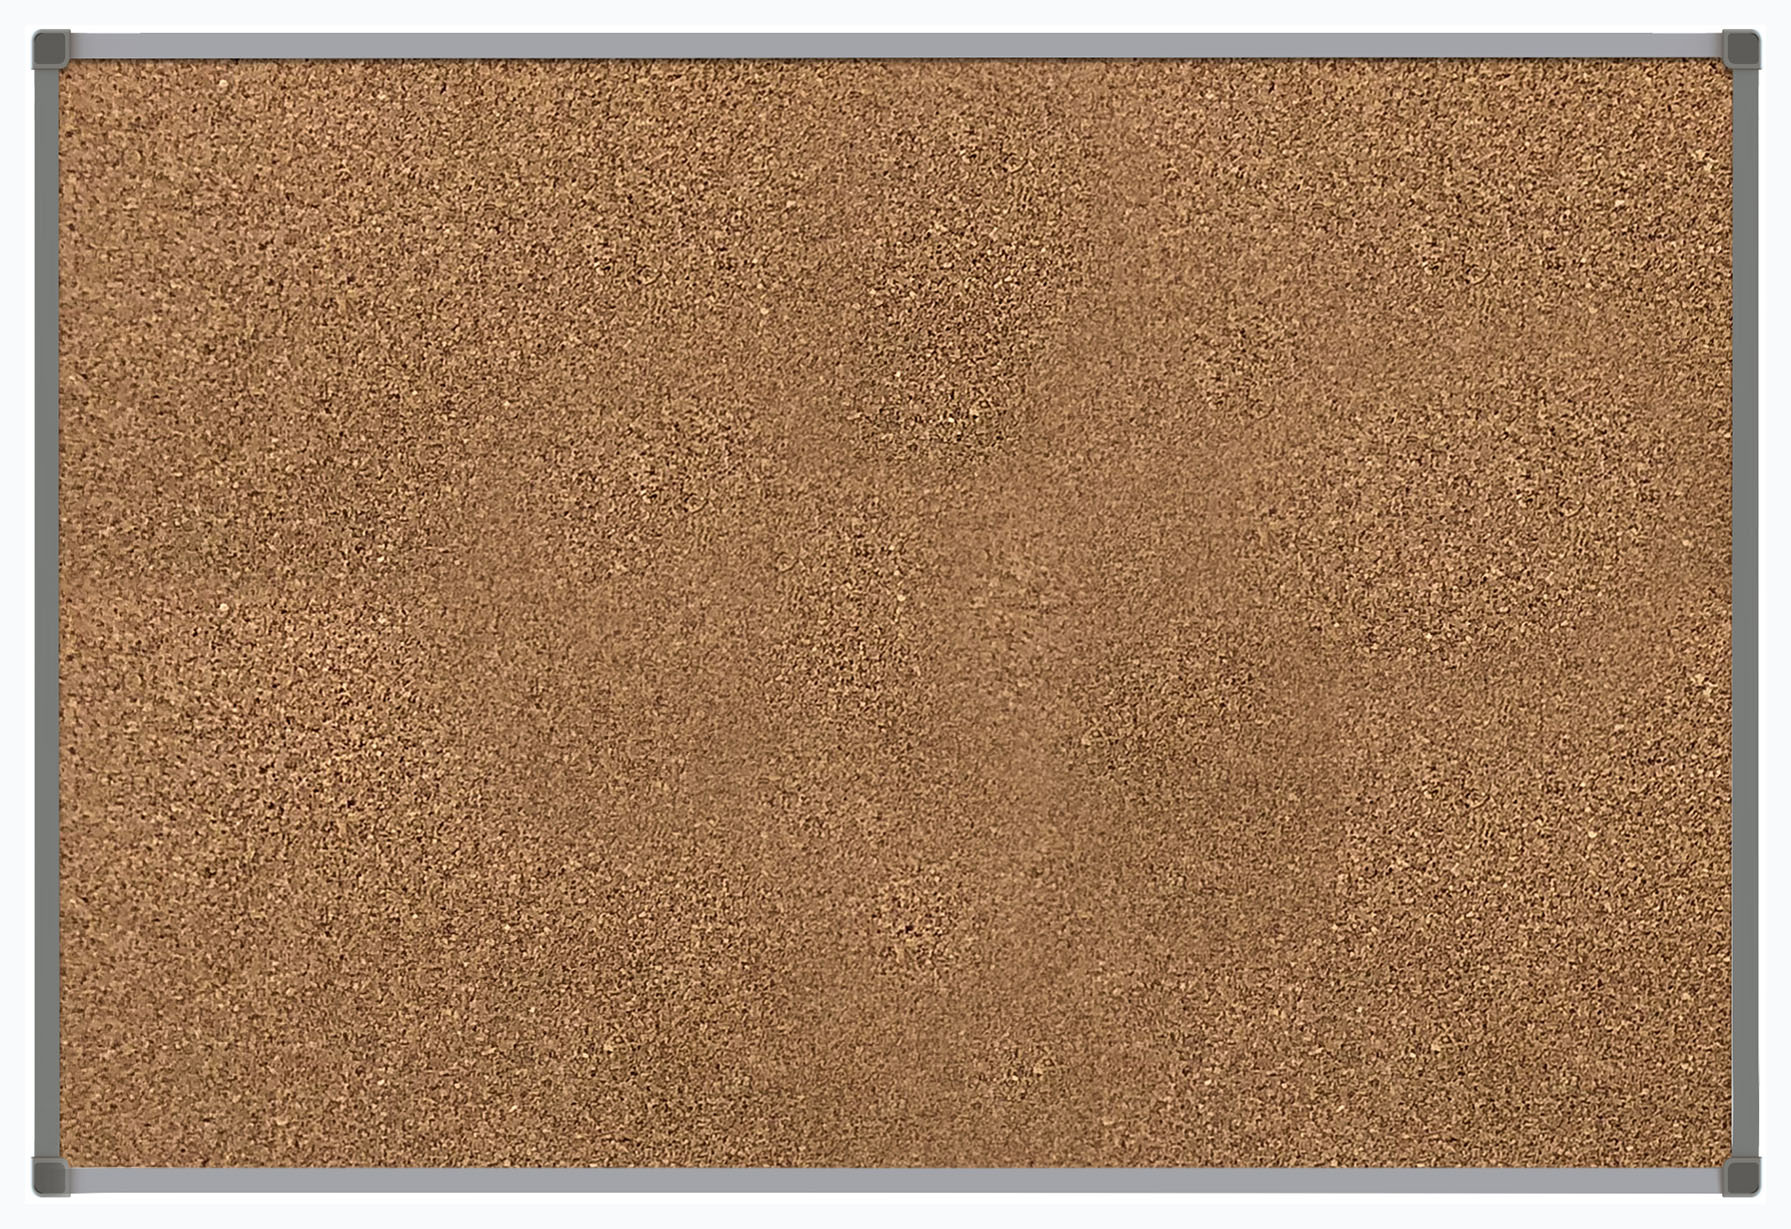 Демонстрационная доска BoardSYS Ecoboard пробковая, 45x60см, пробка (коричневый)/алюминий (серый) (20П45)